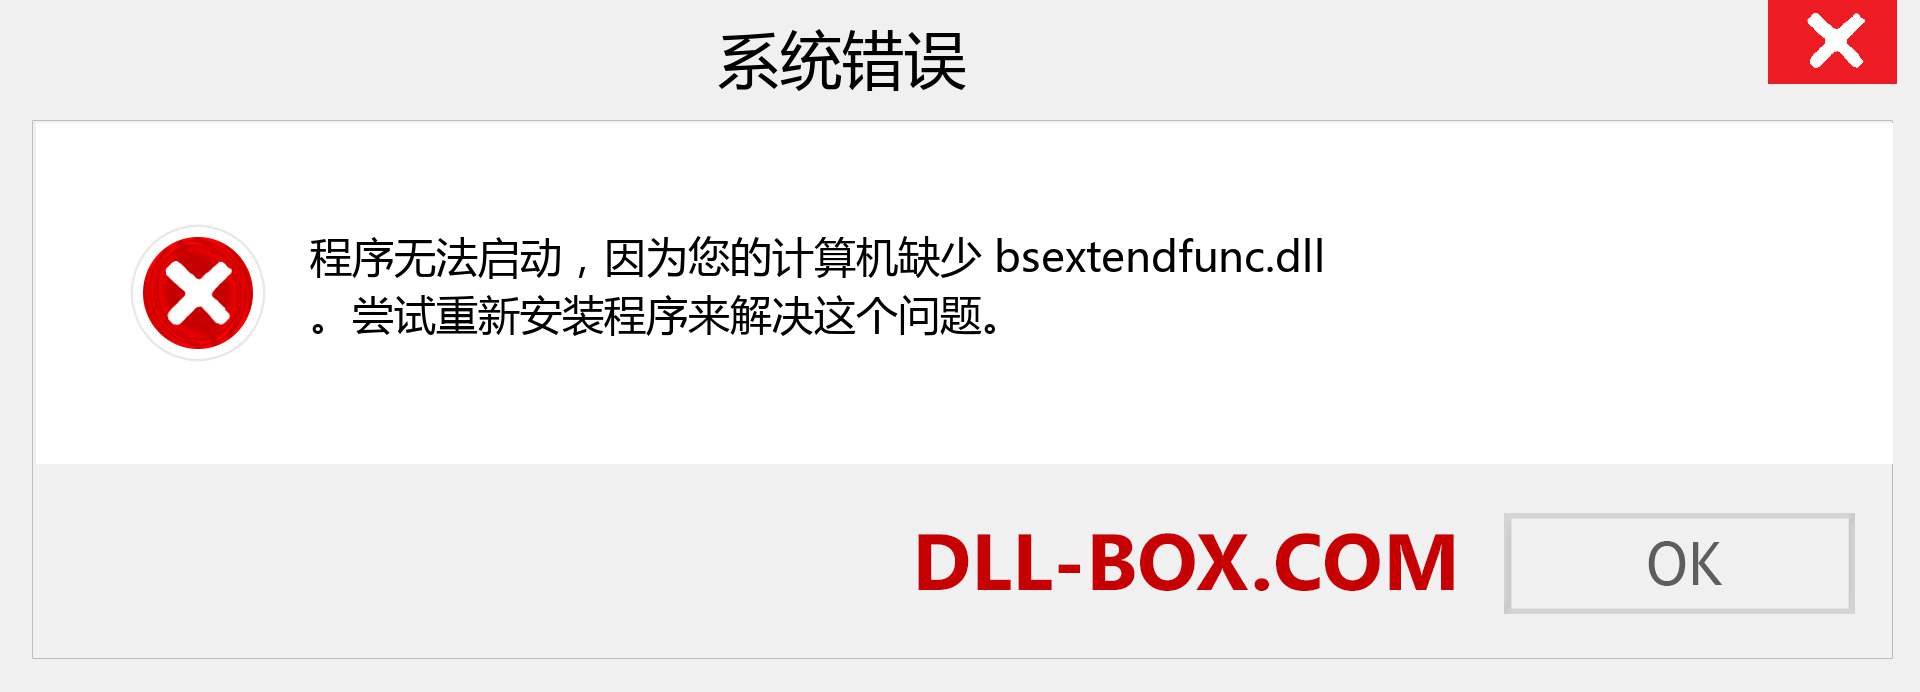 bsextendfunc.dll 文件丢失？。 适用于 Windows 7、8、10 的下载 - 修复 Windows、照片、图像上的 bsextendfunc dll 丢失错误